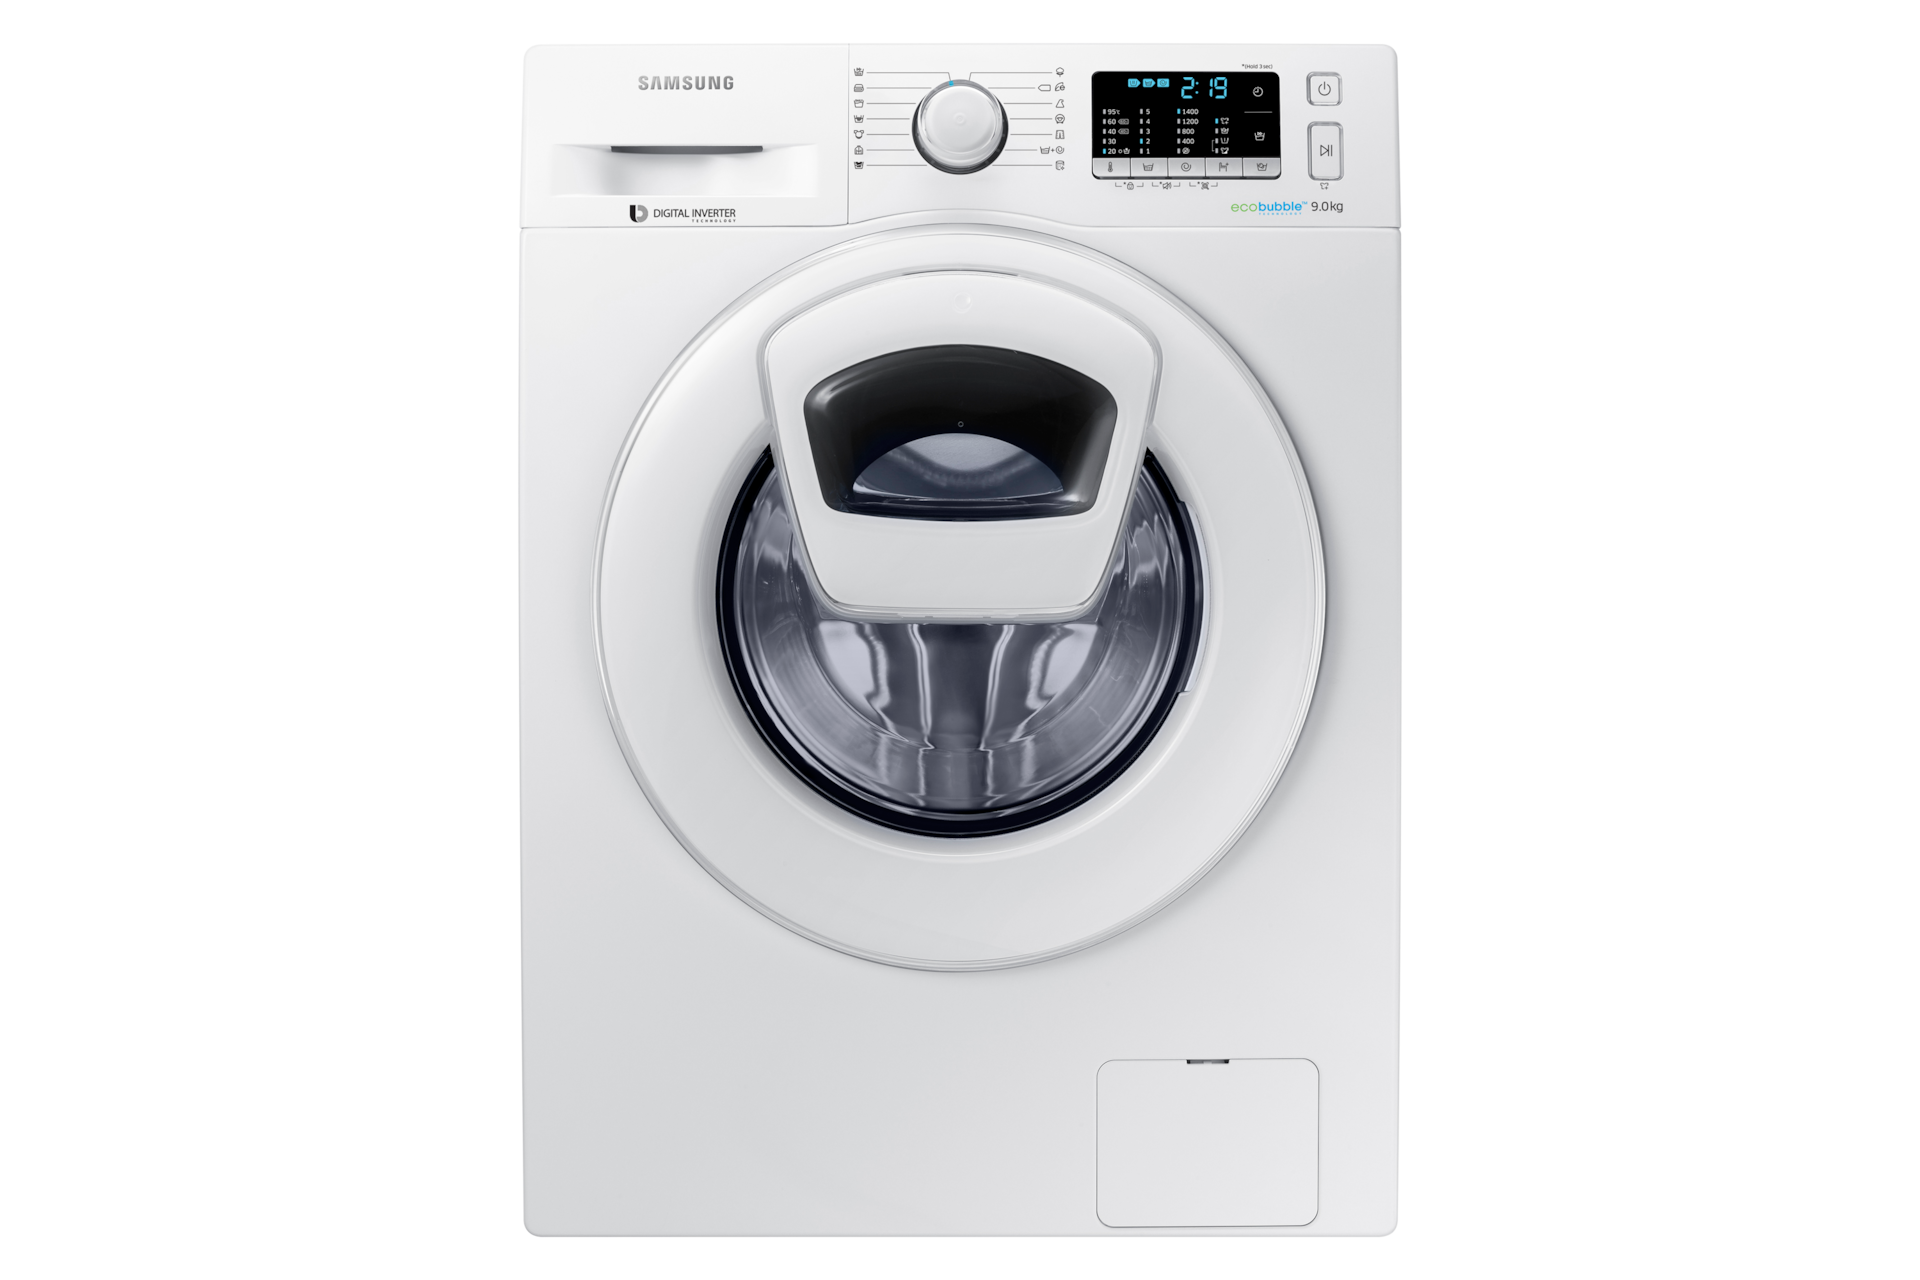 Takke Afstem kompakt WW5500 AddWash Vaskemaskine, 9 kg | Samsung Support Danmark